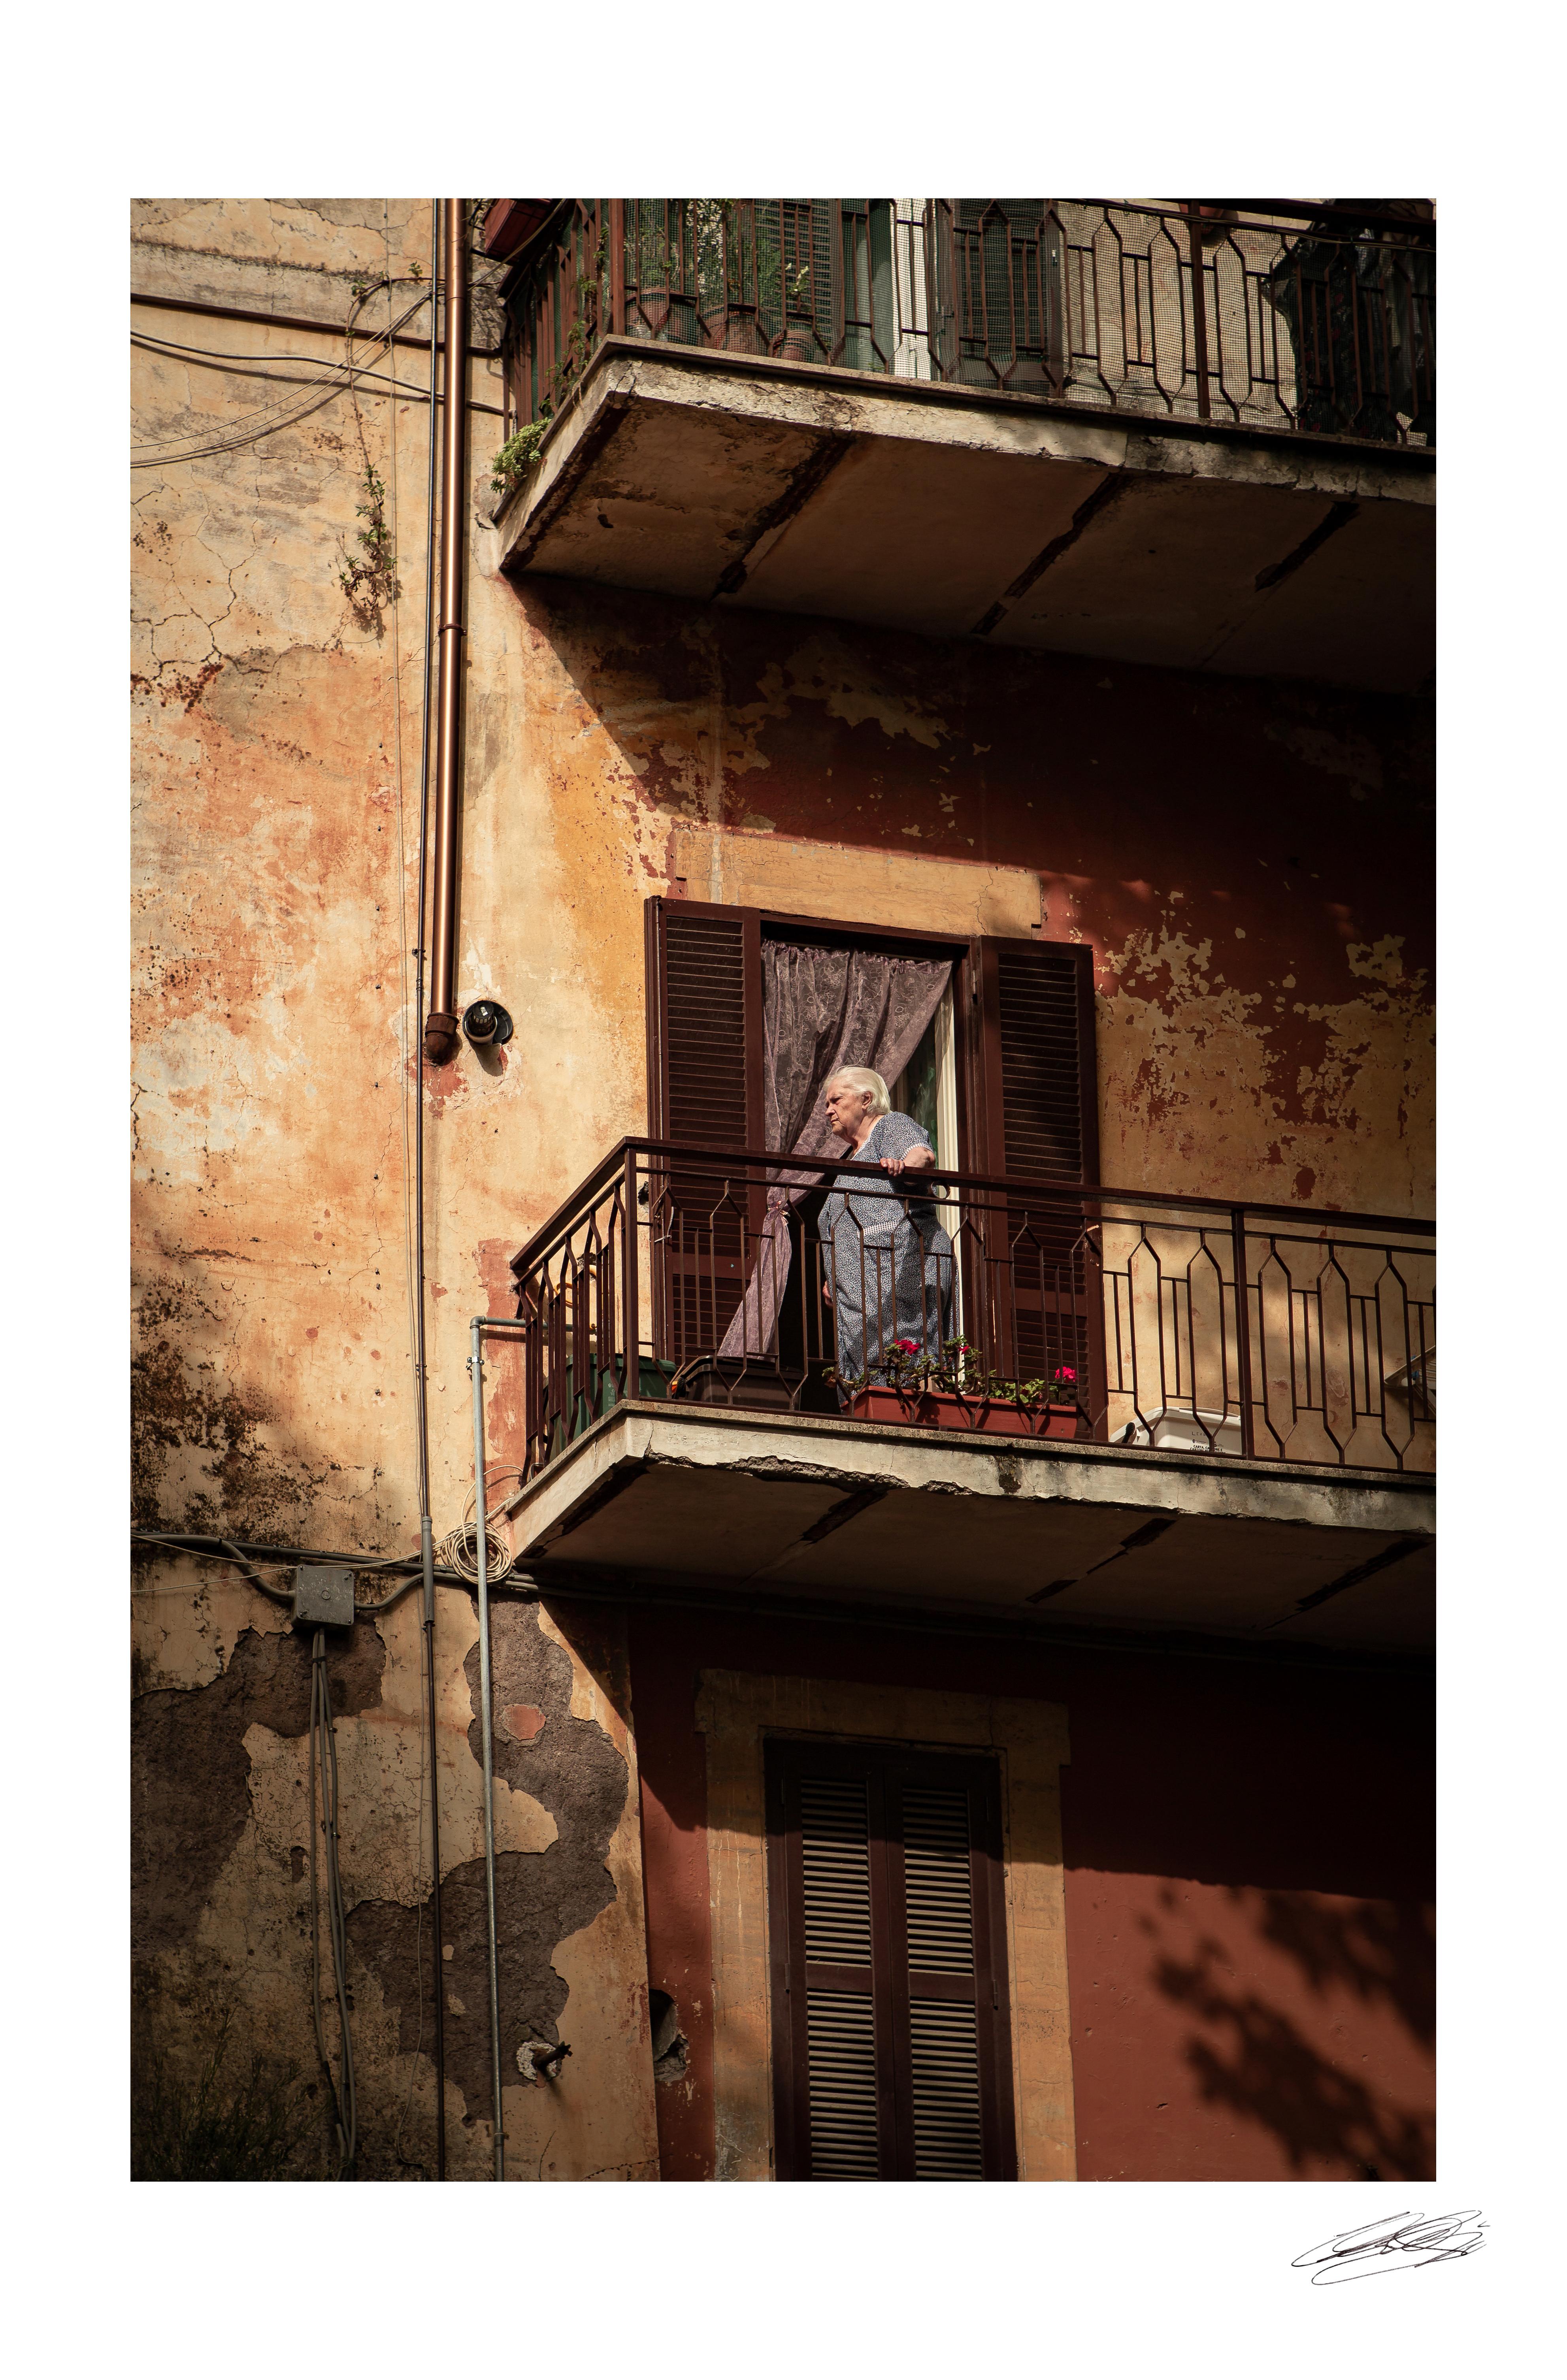 Du balcon est l'une des meilleures photos réalisées par l'artiste italien Carlo Caboni en 2020.

Toujours passionné par les paysages et la photographie, l'artiste s'est ensuite consacré à l'aménagement paysager. Il admire beaucoup la beauté des